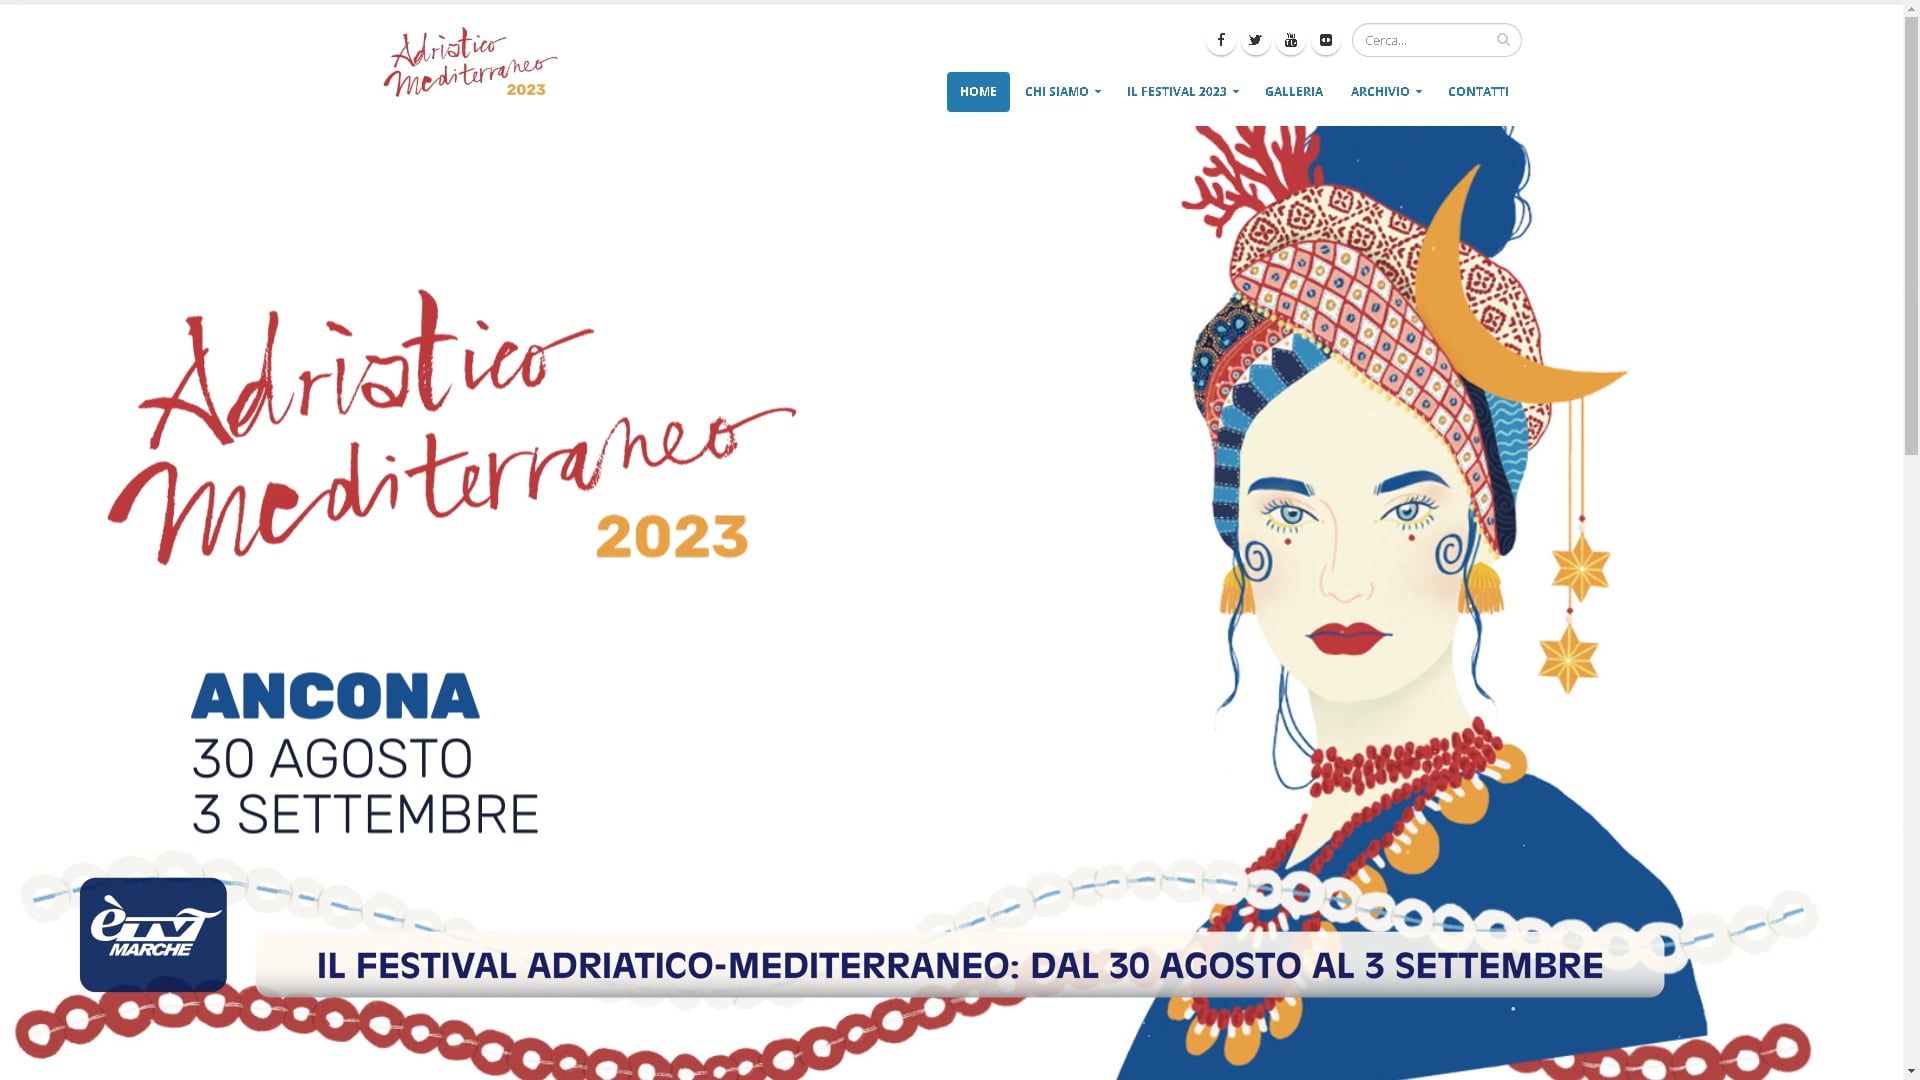 Il Festival Adriatico-Mediterraneo: dal 30 agosto al 3 settembre - VIDEO